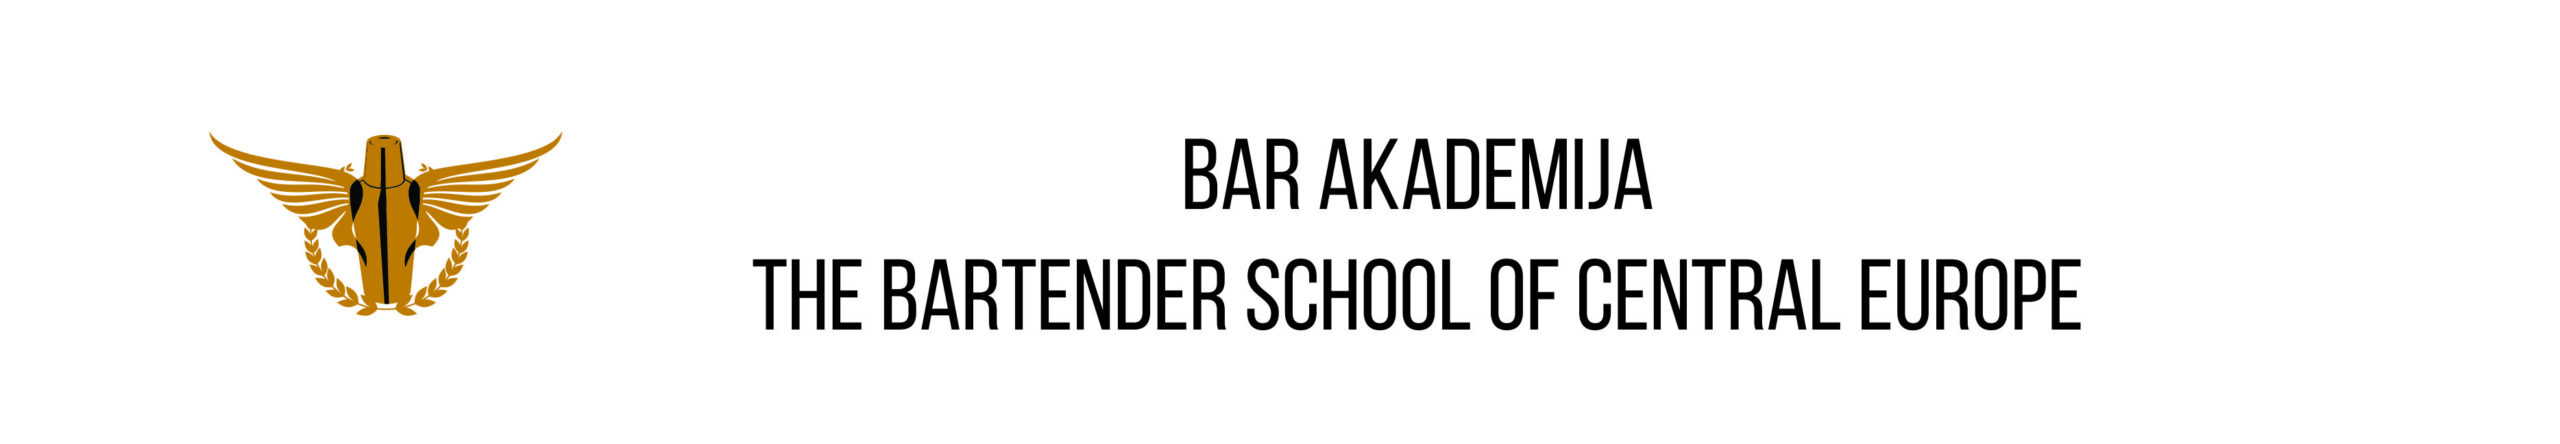 Bar Akademija